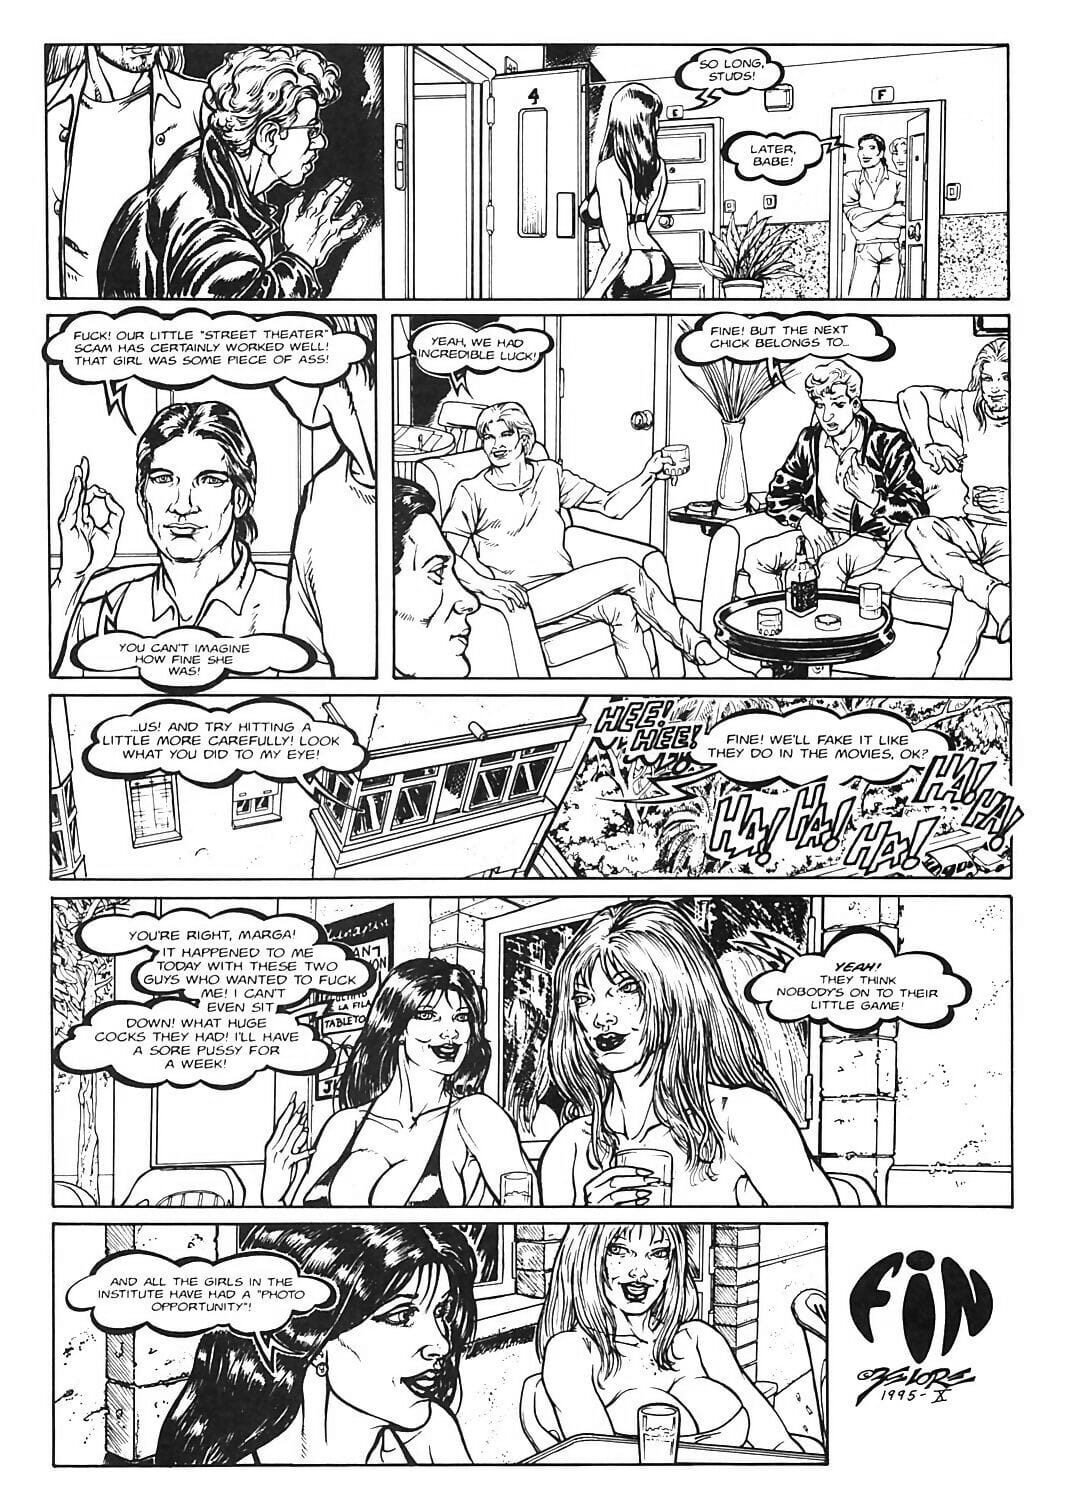 Lolita - Volume #3 - part 2 page 1